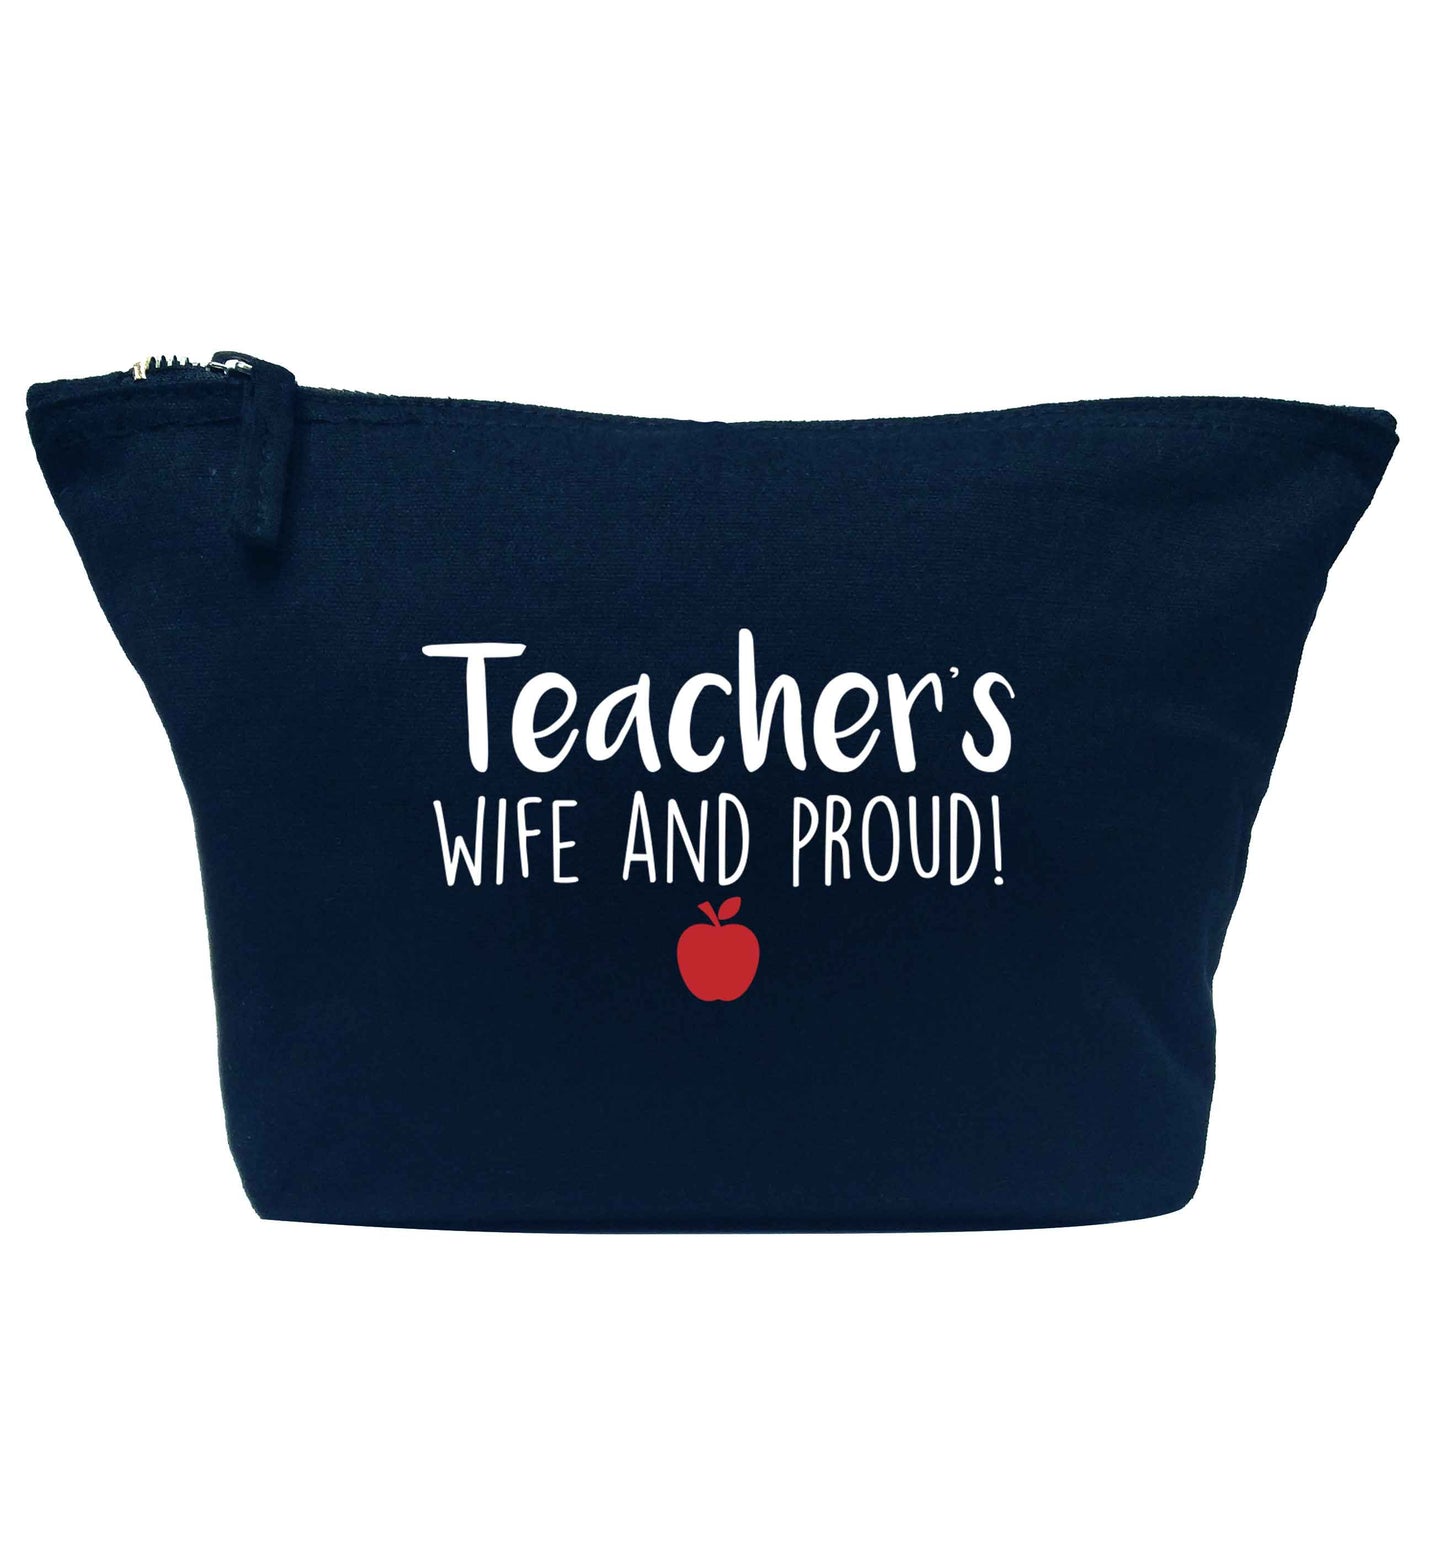 Teachers wife and proud navy makeup bag